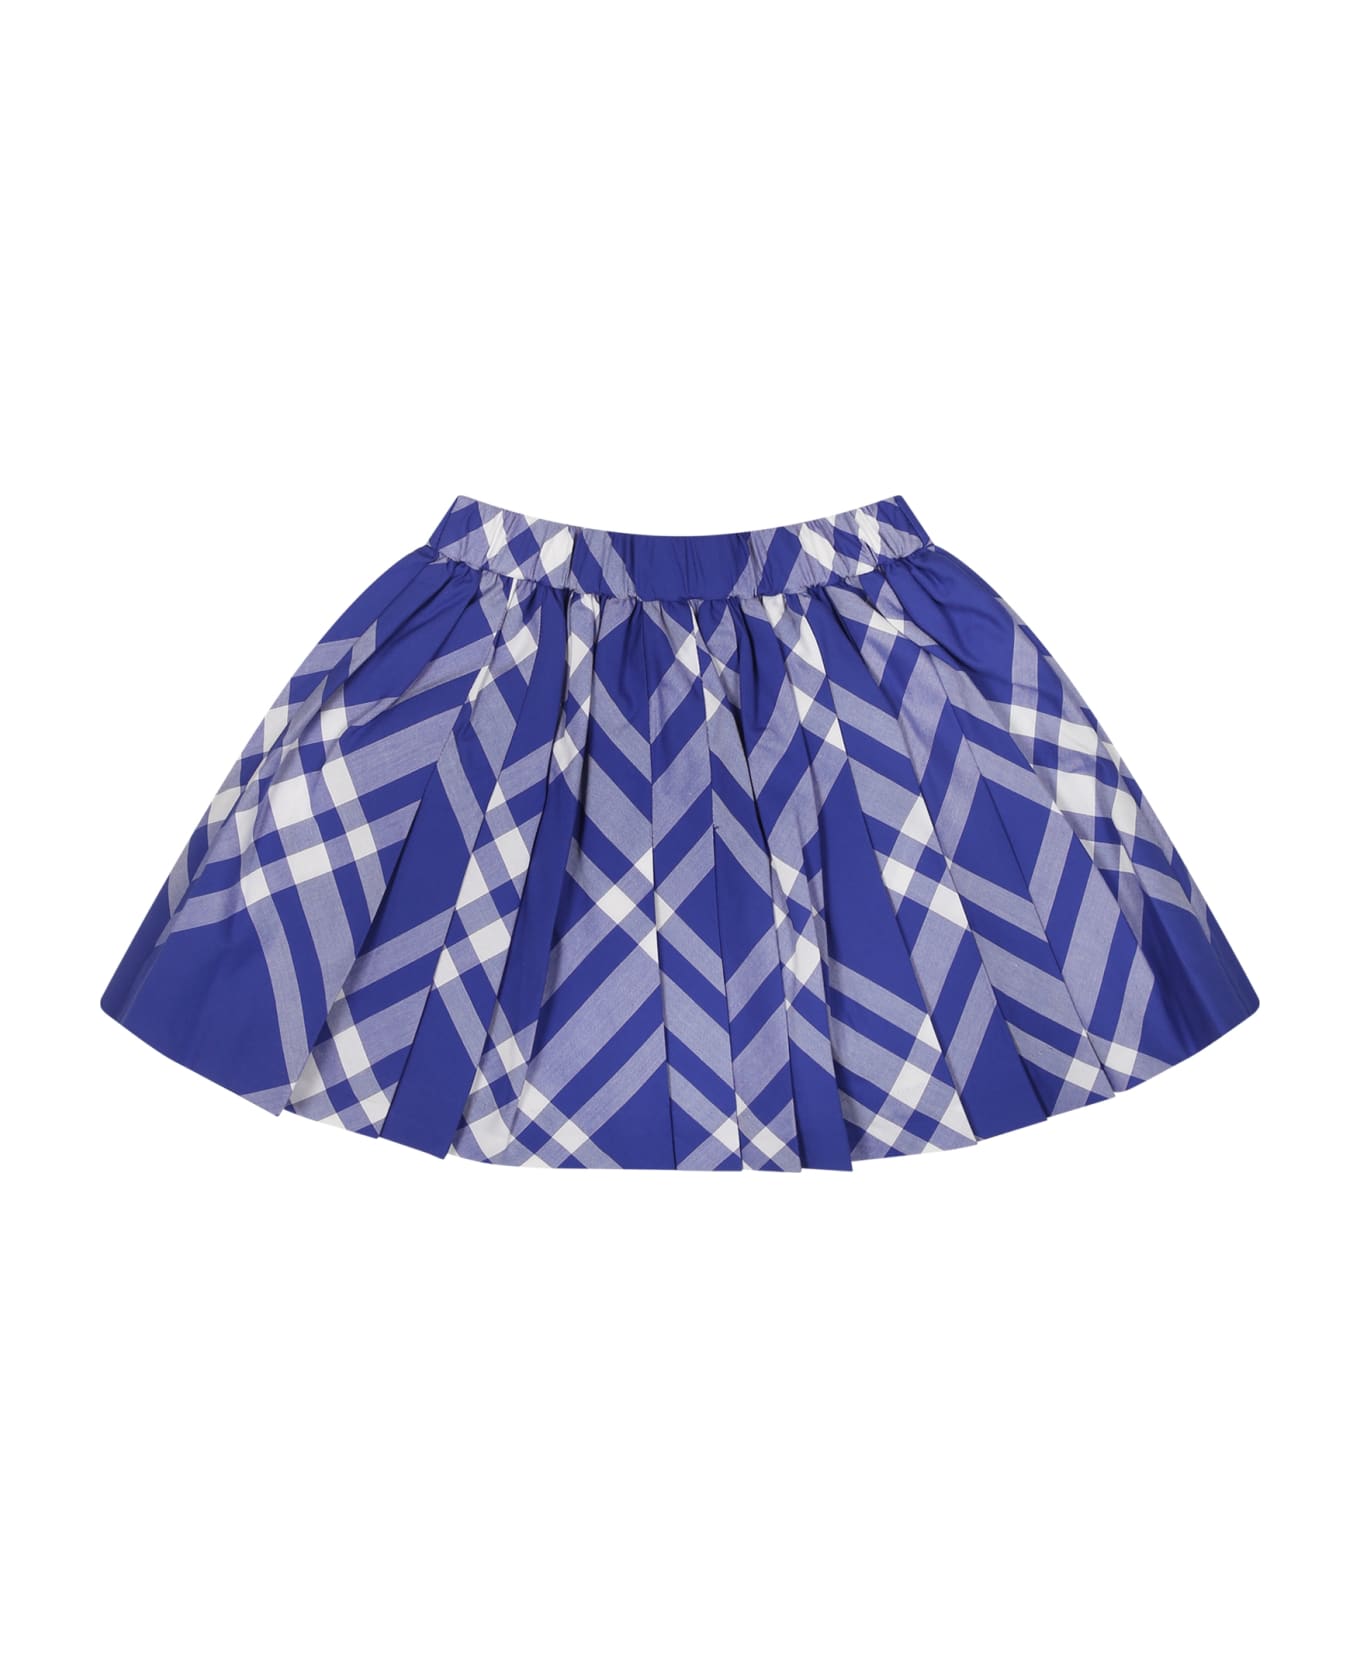 Burberry Blue Skirt For Baby Girl - Blu ボトムス